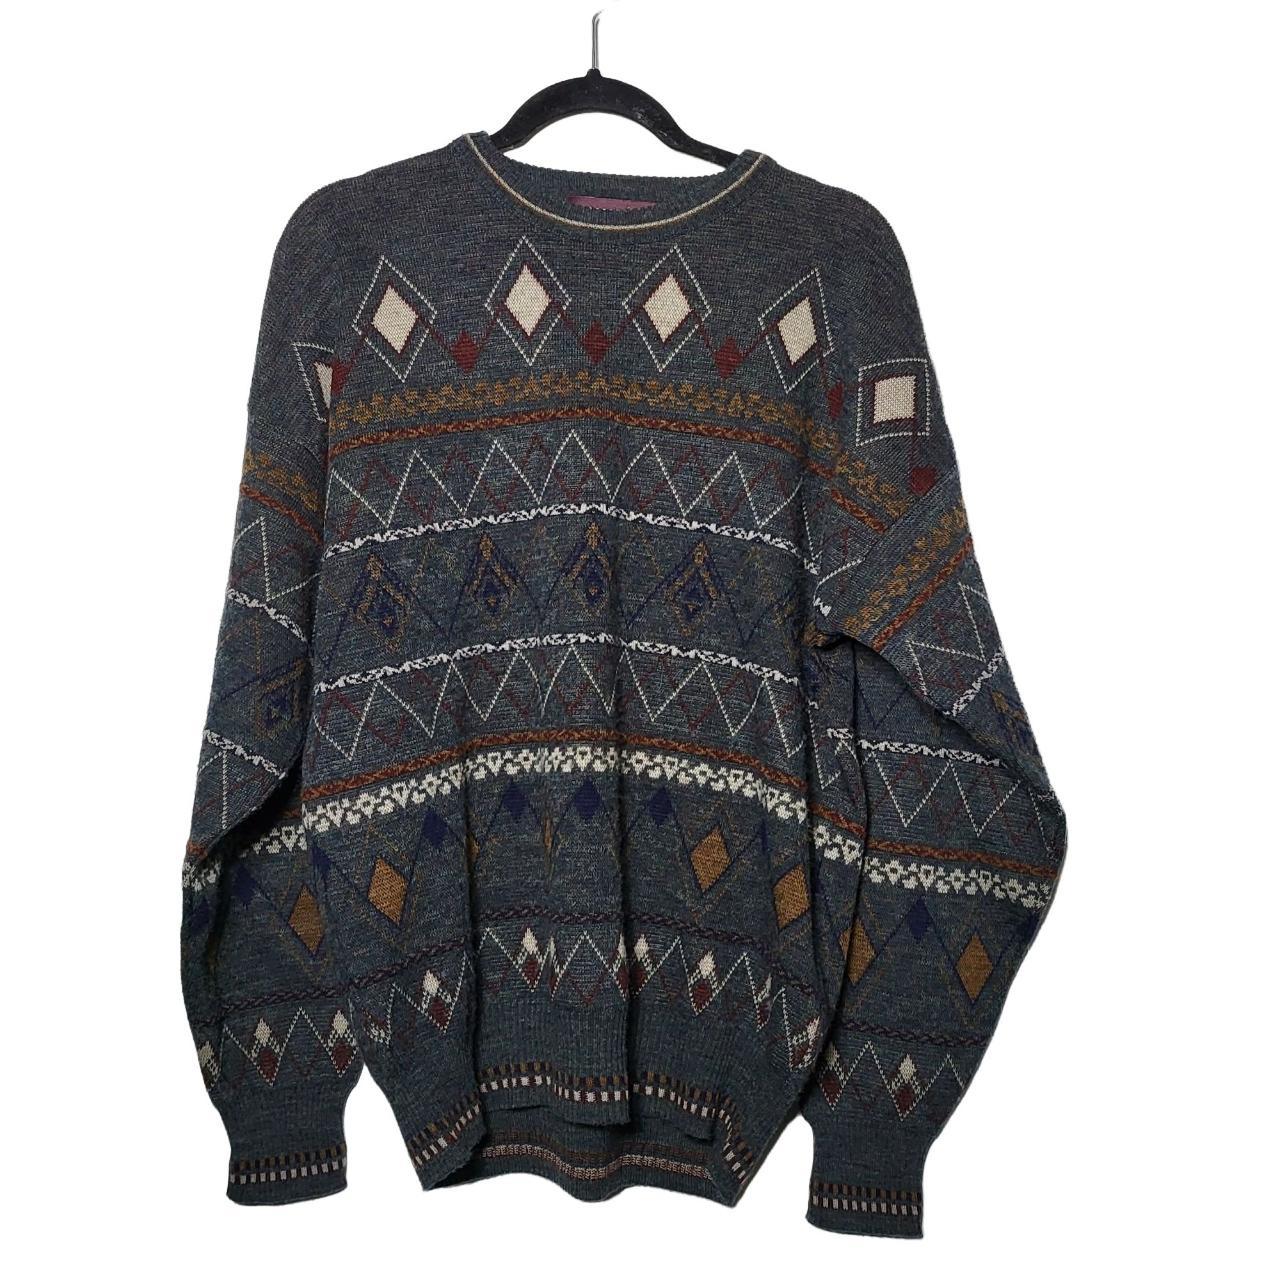 Vintage John Ashford Wool Blend Printed Sweater... - Depop